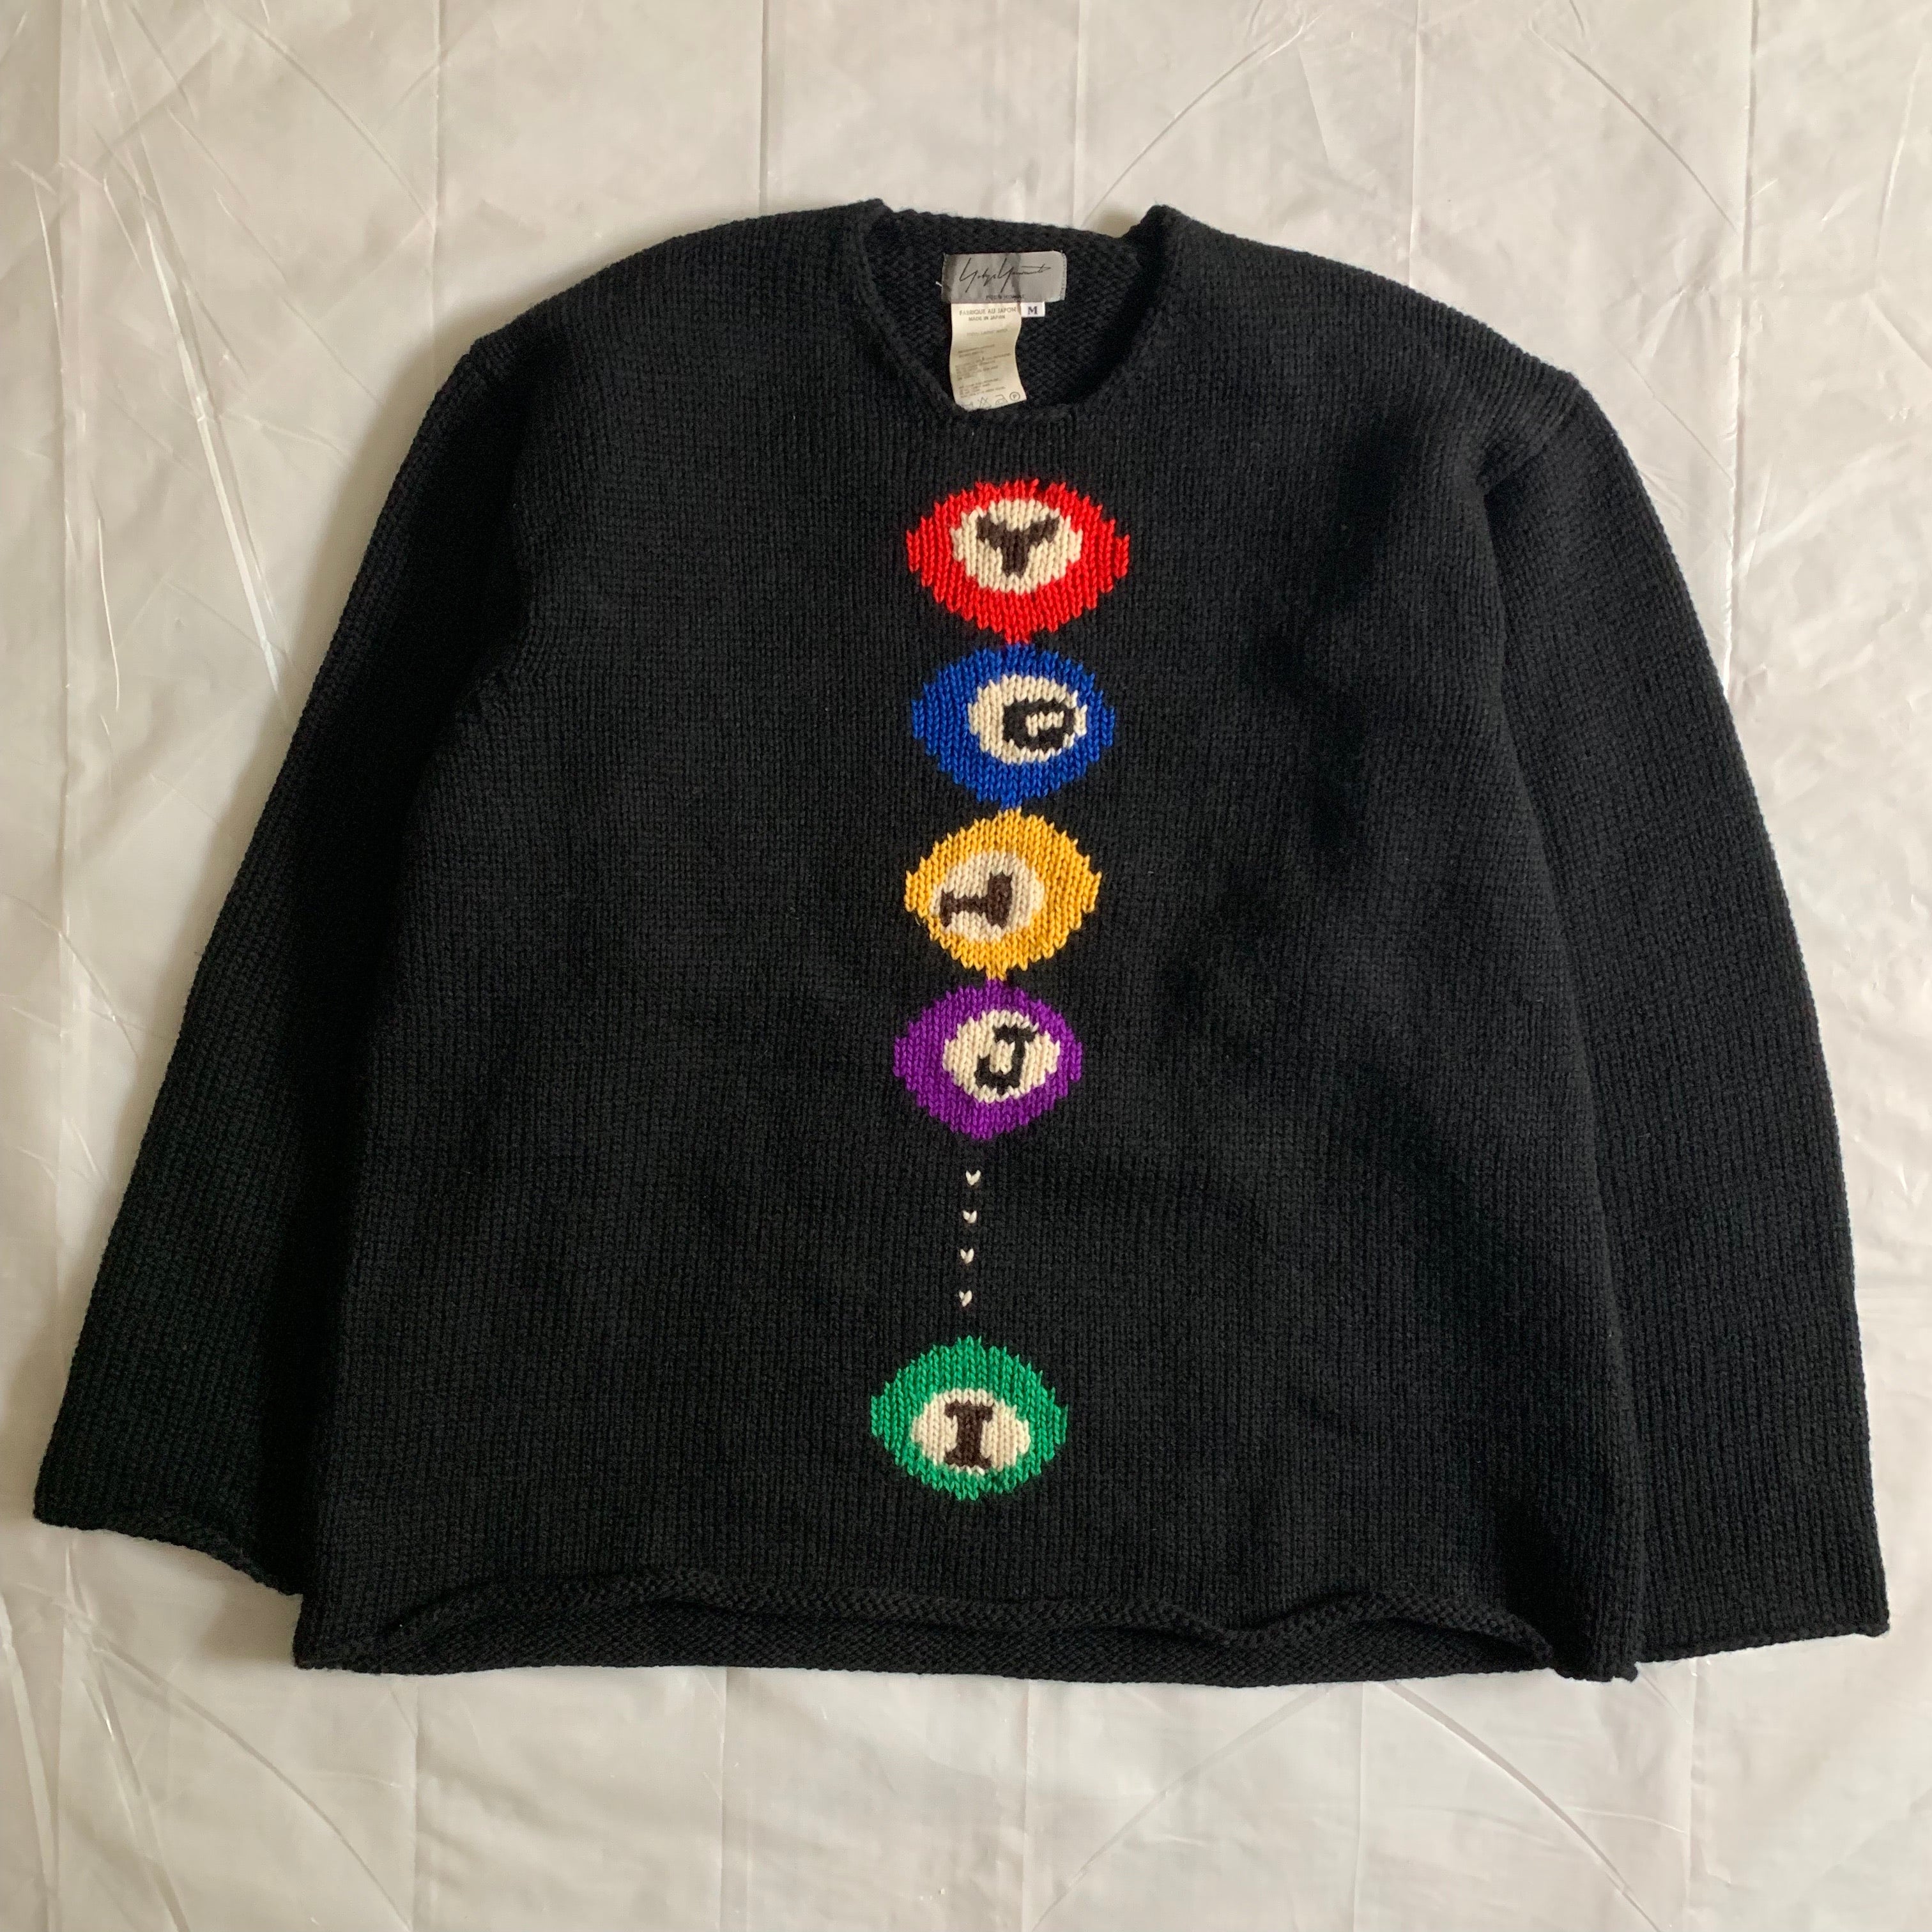 aw1997 Yohji Yamamoto Black Billiards Knit Sweater - Size M